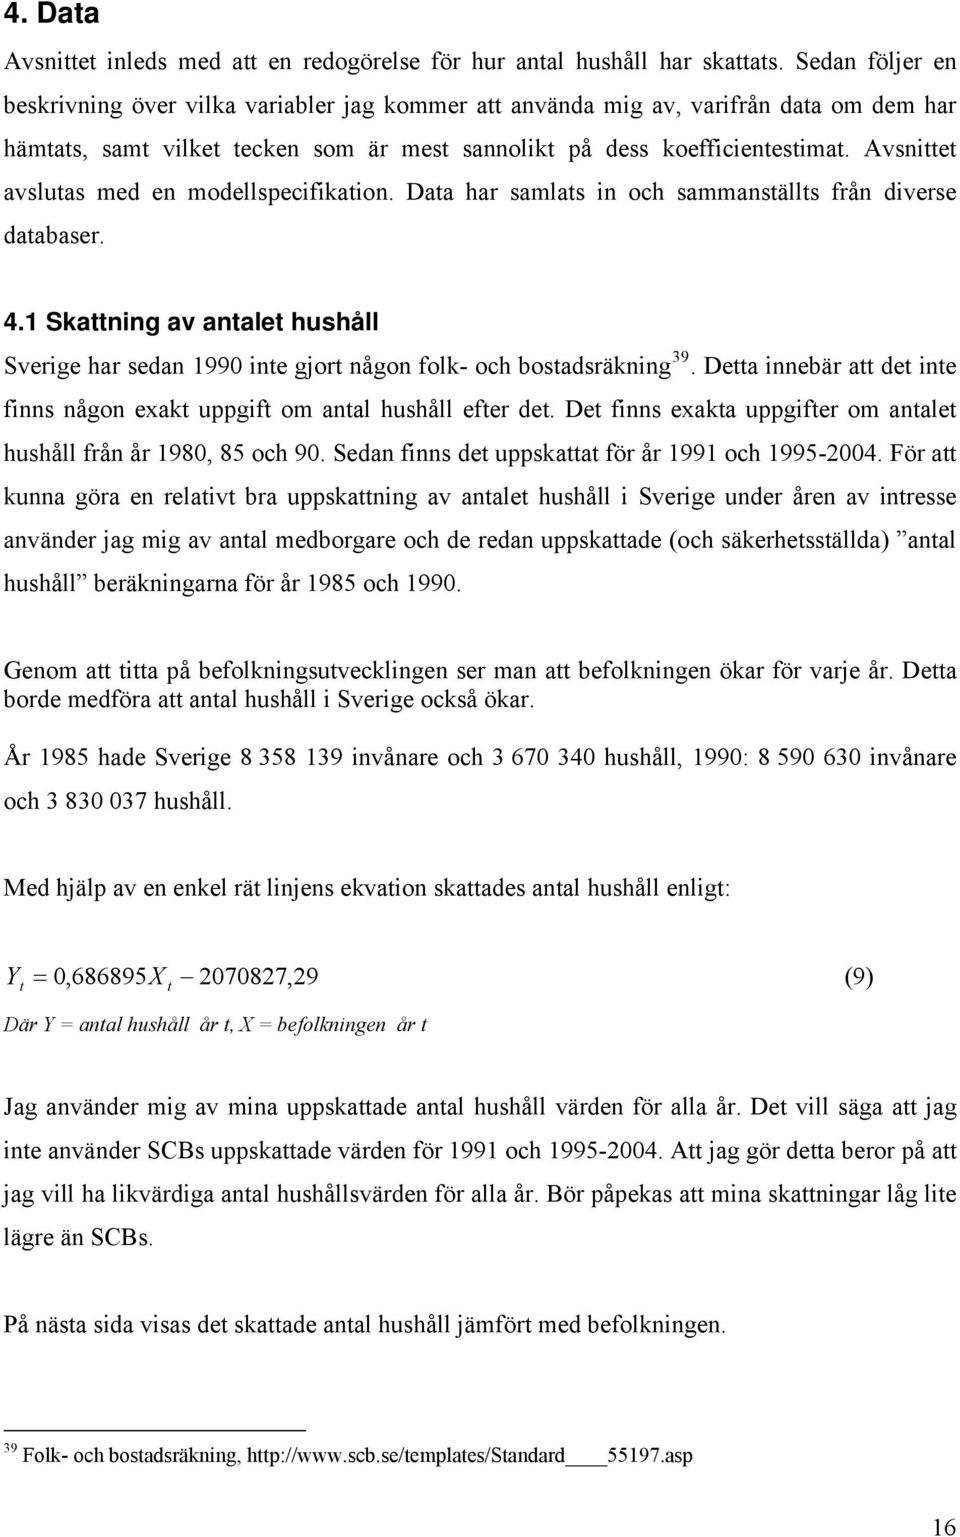 Avsnie avsluas med en modellspecifikaion. Daa har samlas in och sammansälls från diverse daabaser. 4.1 Skaning av anale hushåll Sverige har sedan 1990 ine gjor någon folk- och bosadsräkning 39.